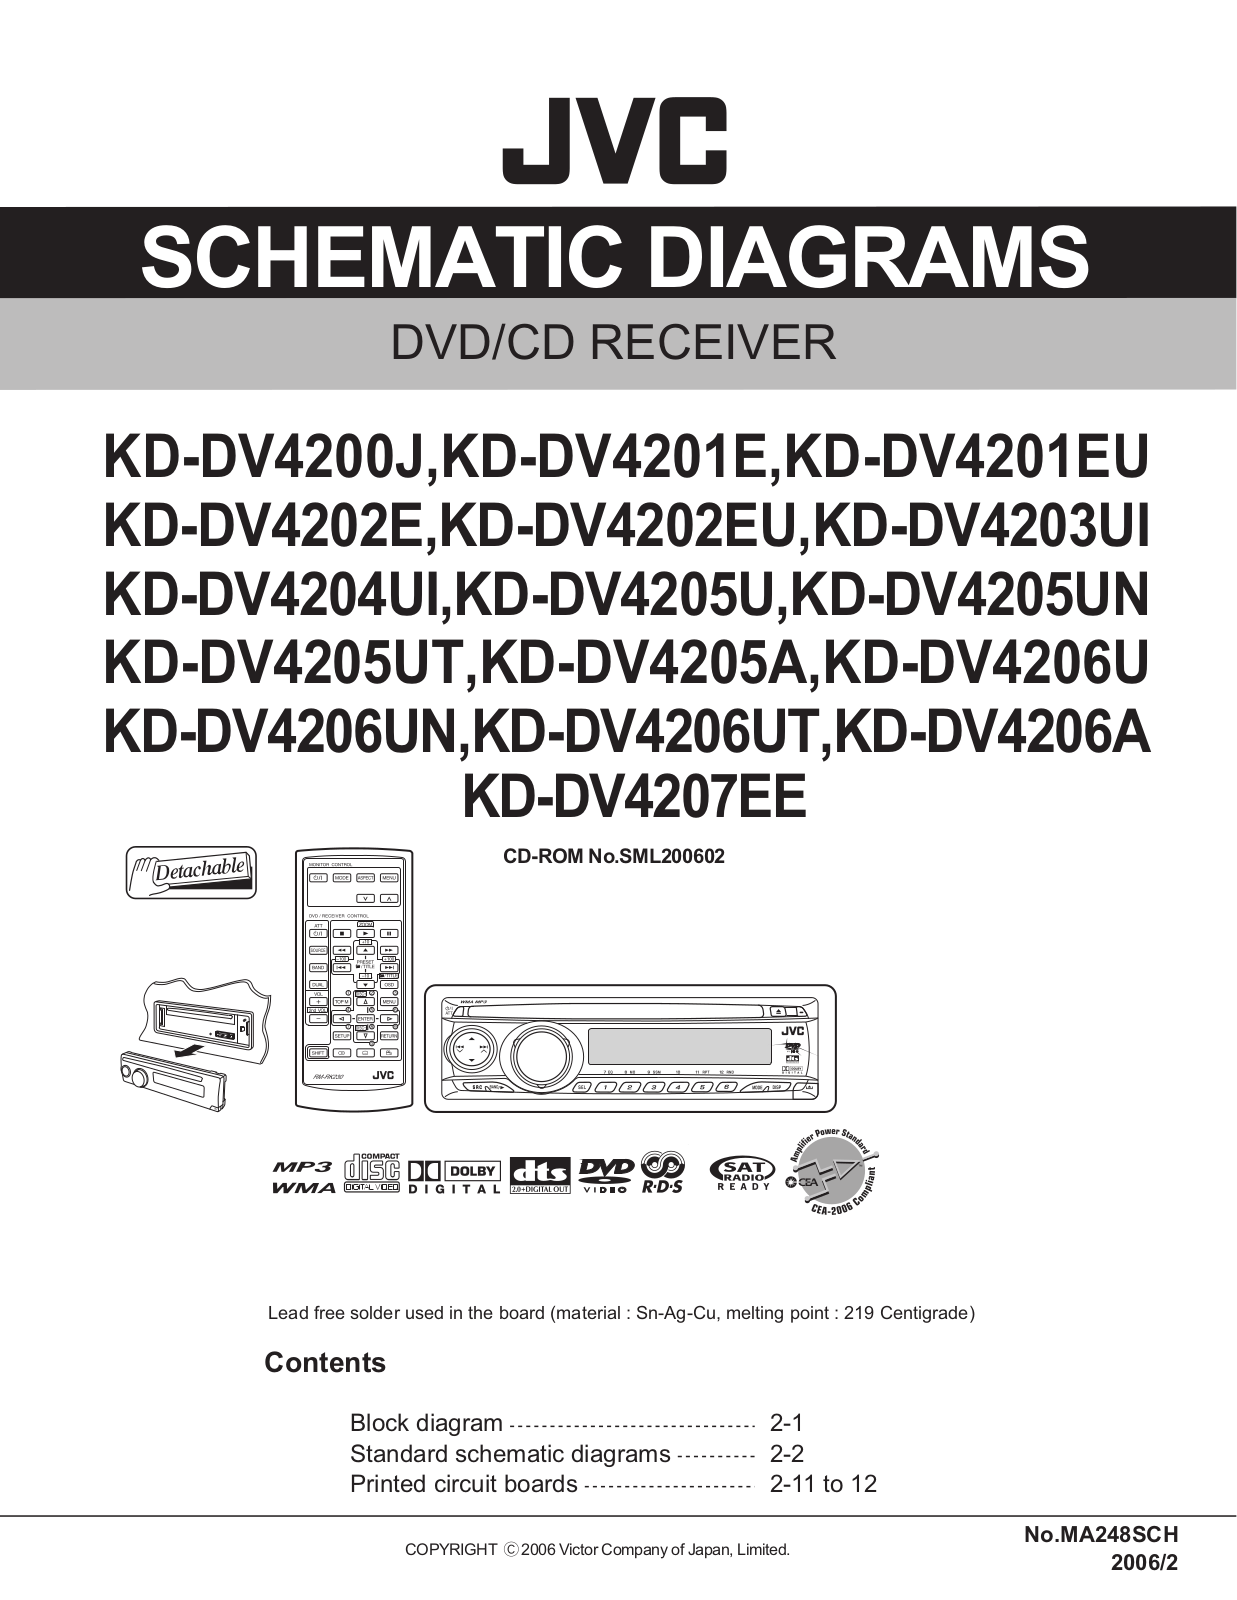 JVC KD-DV4200J, KD-DV4201E, KD-DV4201EU, KD-DV4202E, KD-DV4202EU Schematic